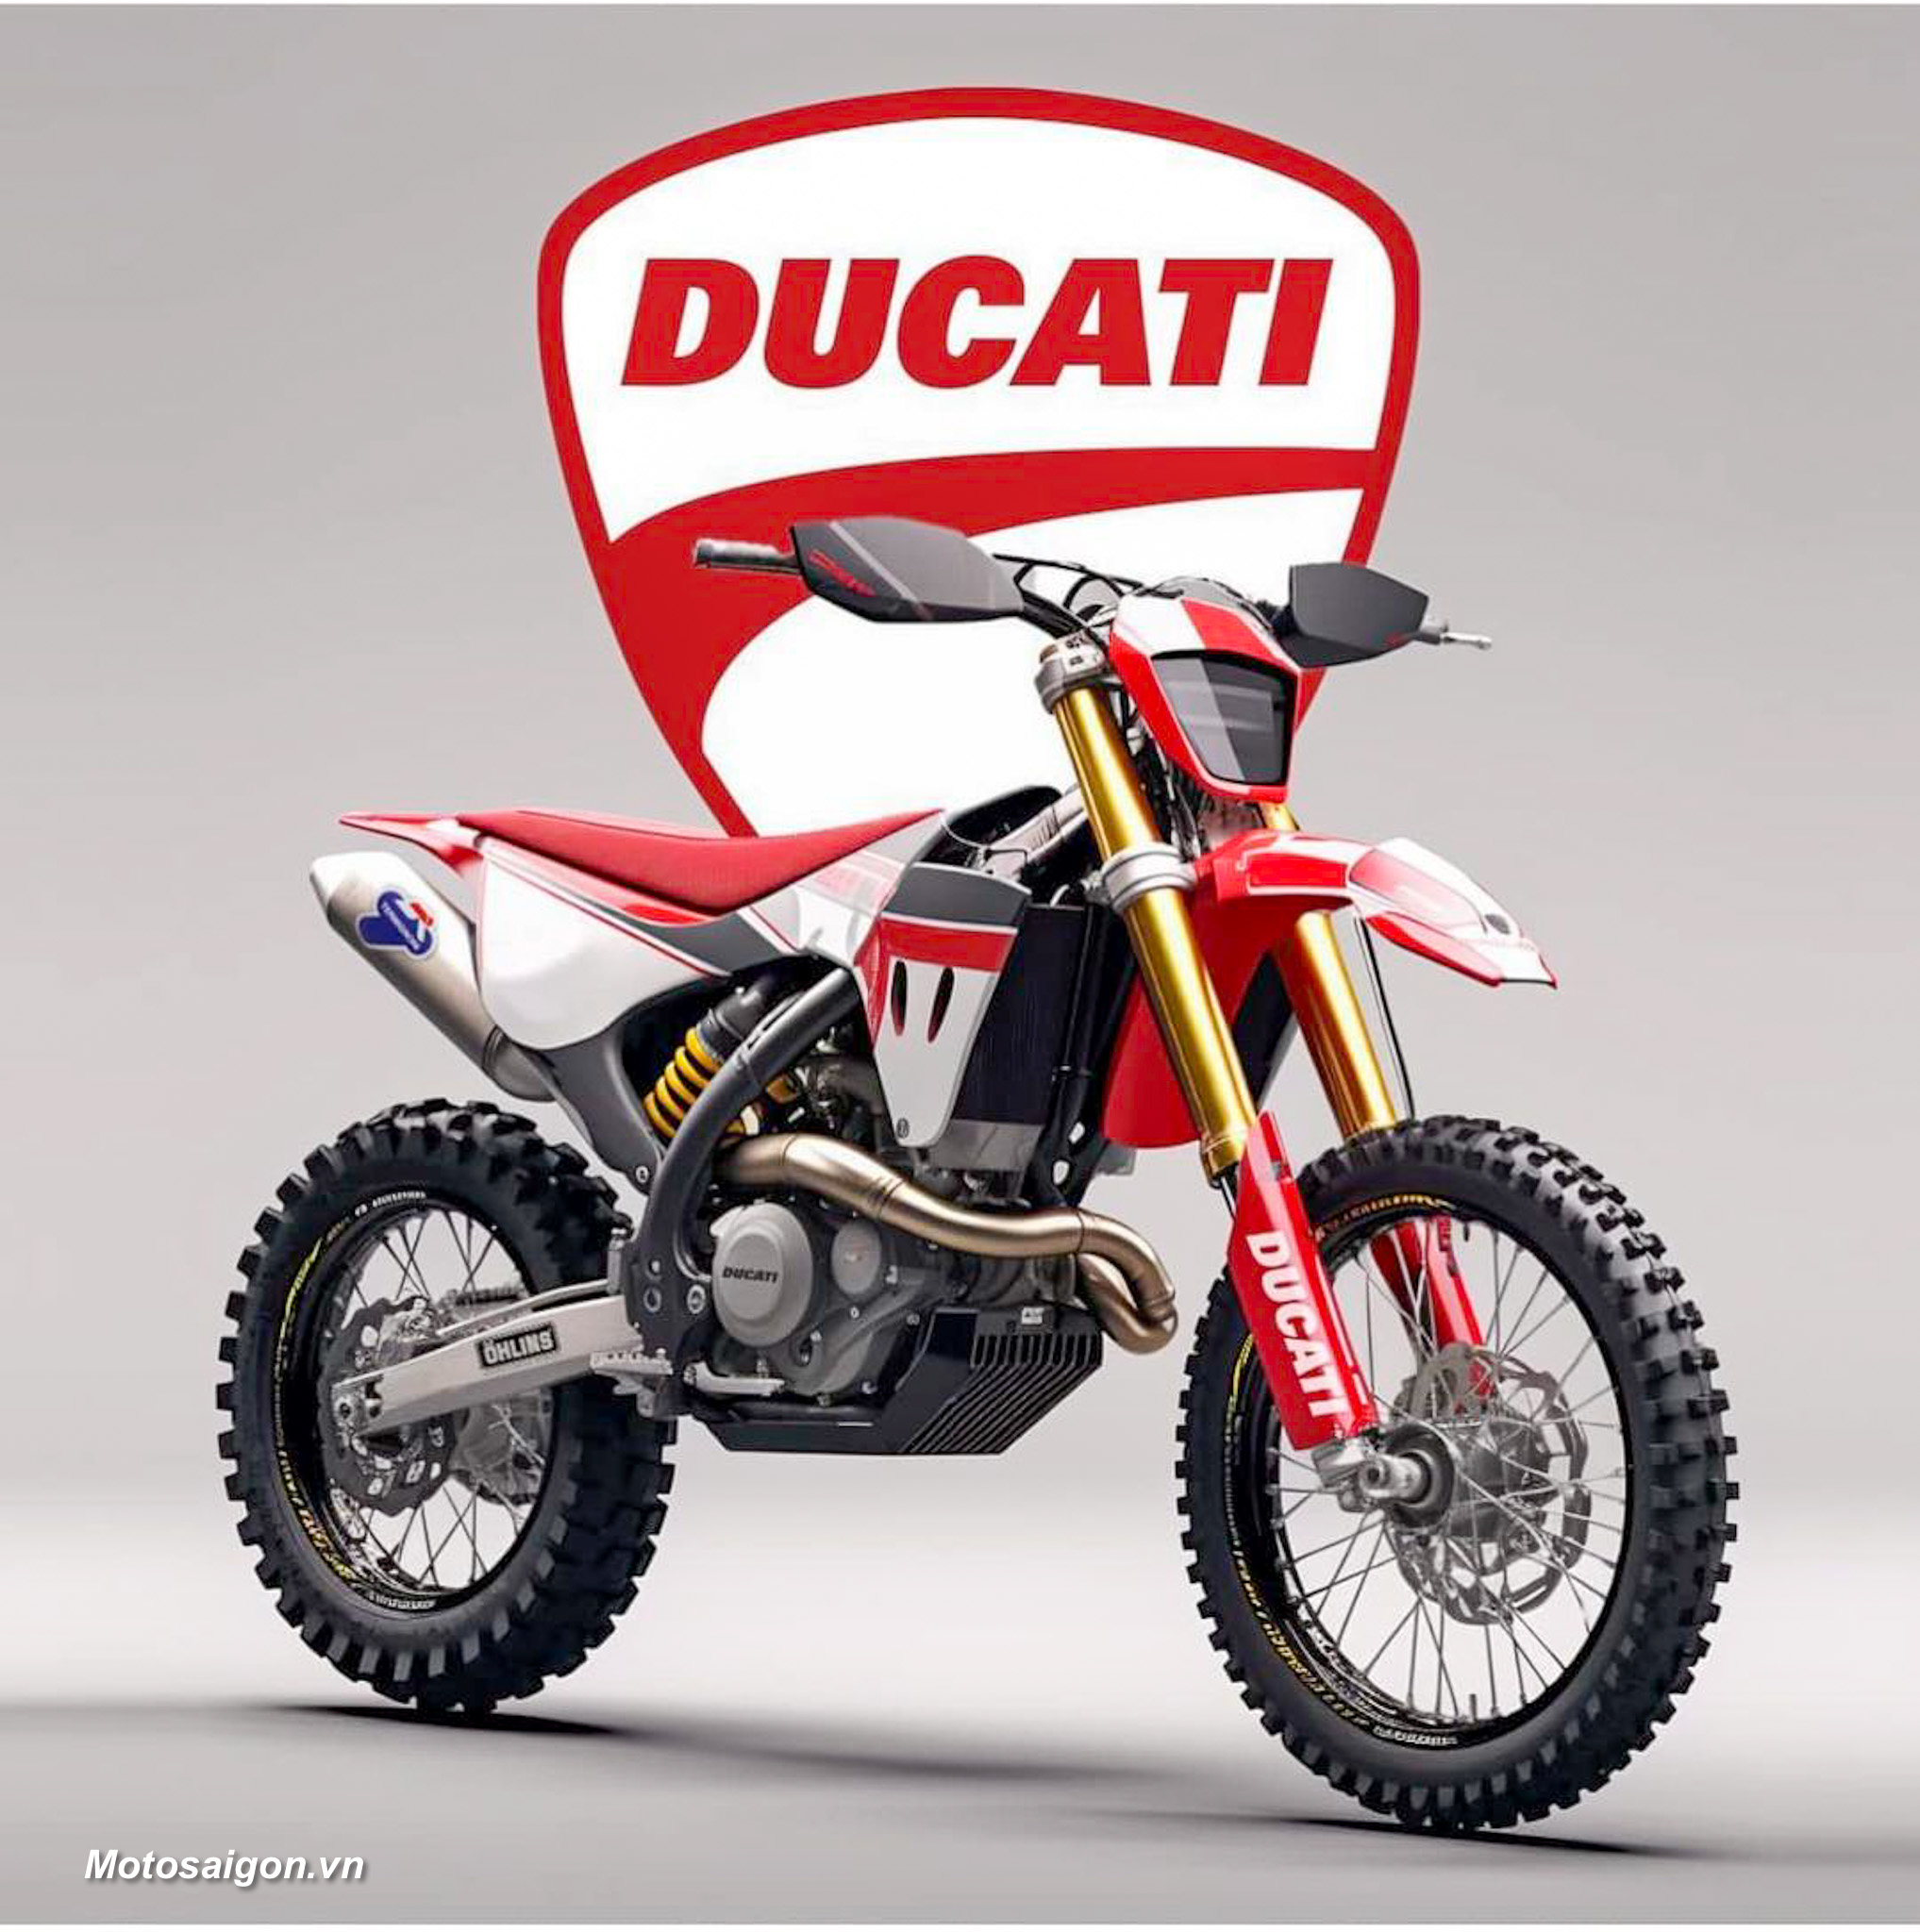 Ducati sắp ra mắt xe cào cào Motocross 450cc?